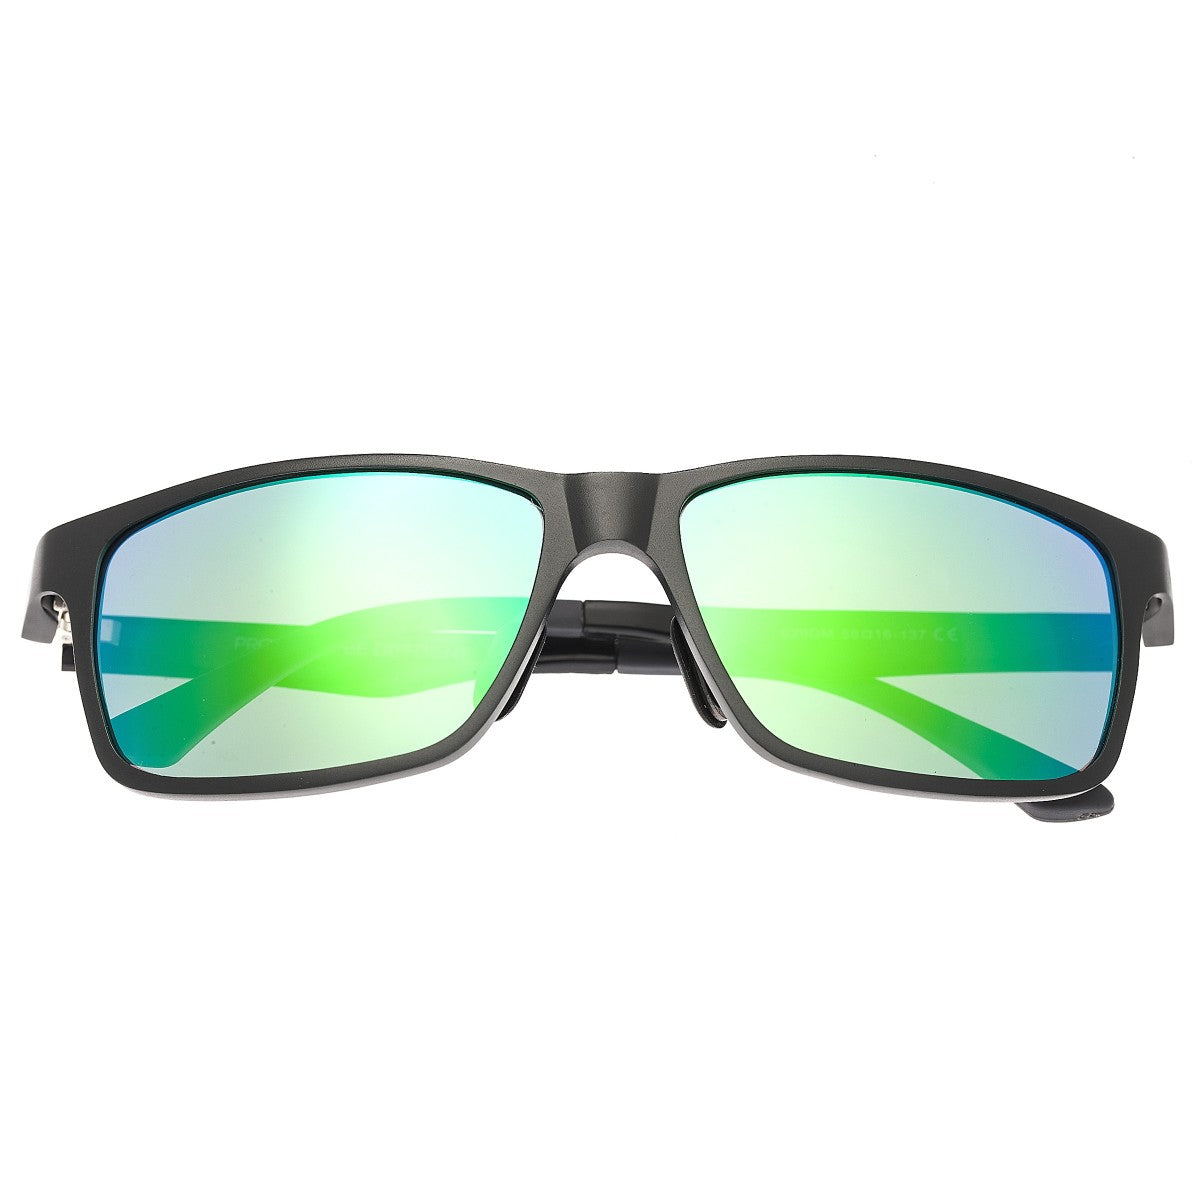 Breed Vulpecula Titanium Polarized Sunglasses - Gunmetal/Blue-Green - BSG029GM